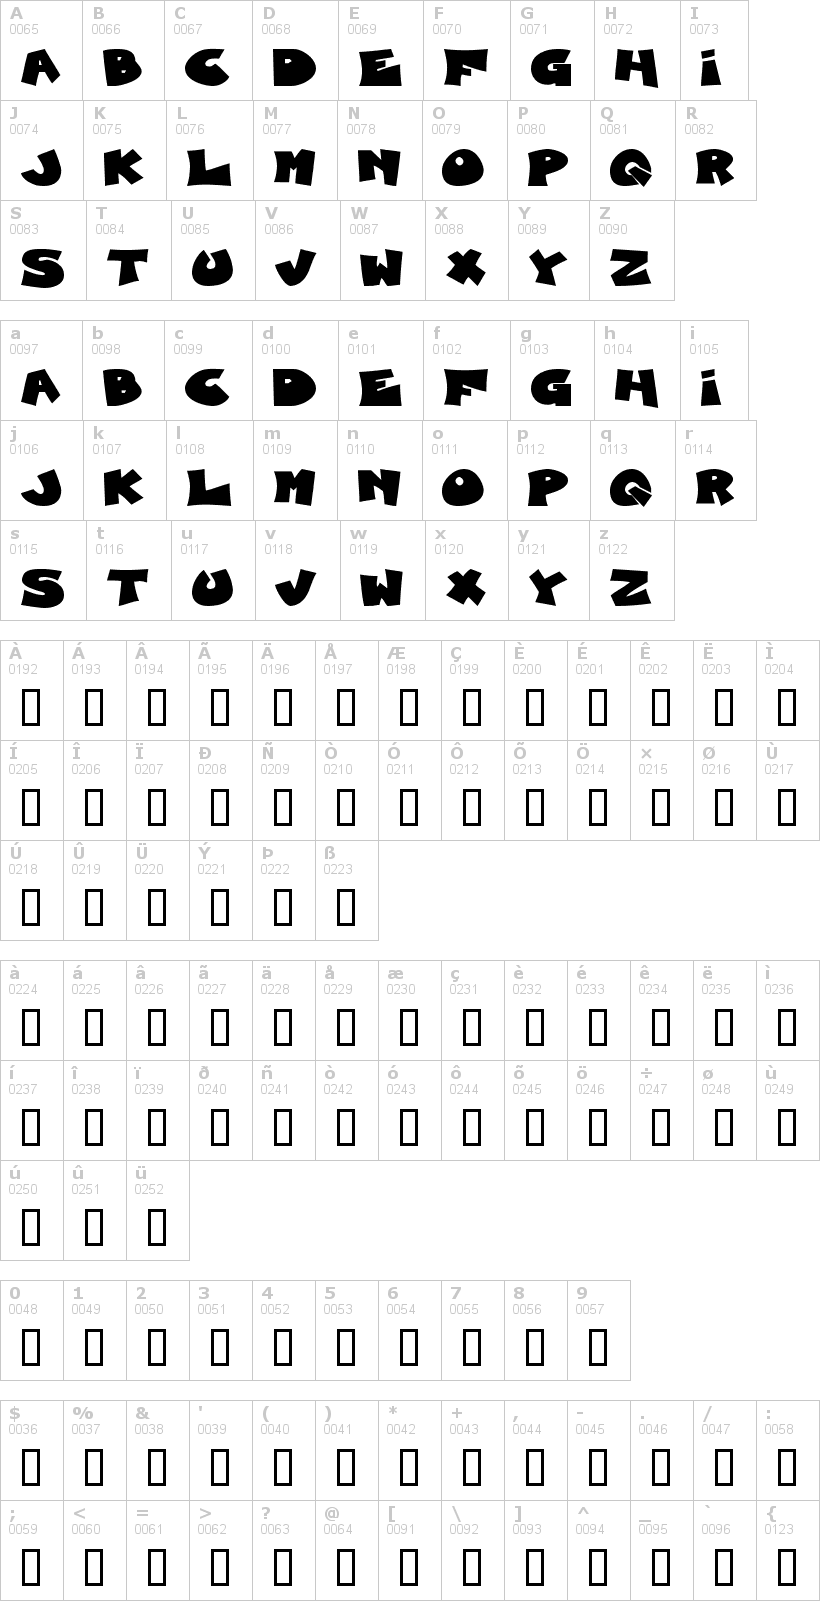 Lettere dell'alfabeto del font blueberry-foxhound con le quali è possibile realizzare adesivi prespaziati